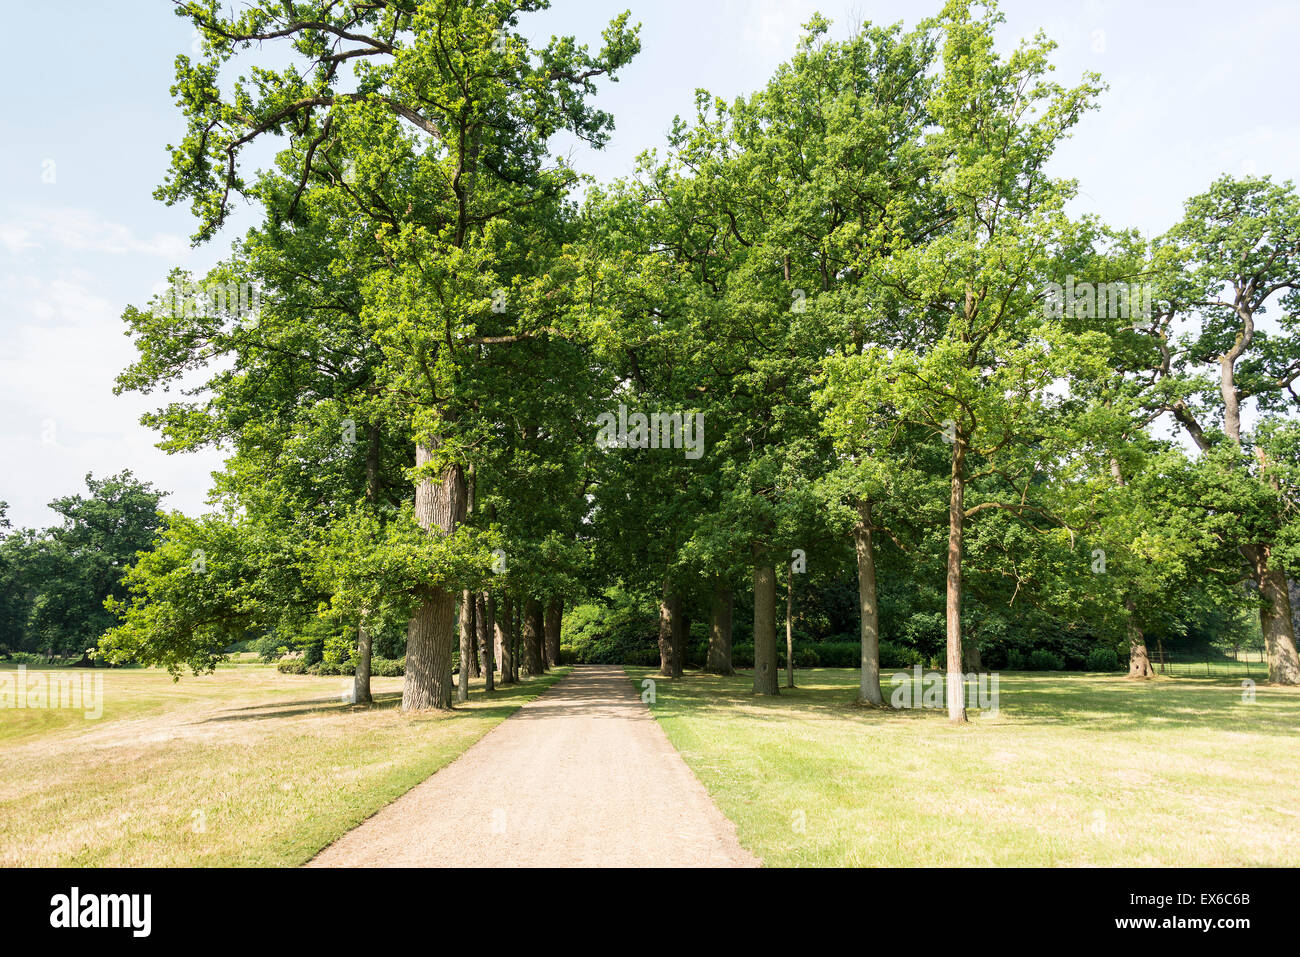 De camino a pie en un gran jardín con árboles verdes Foto de stock